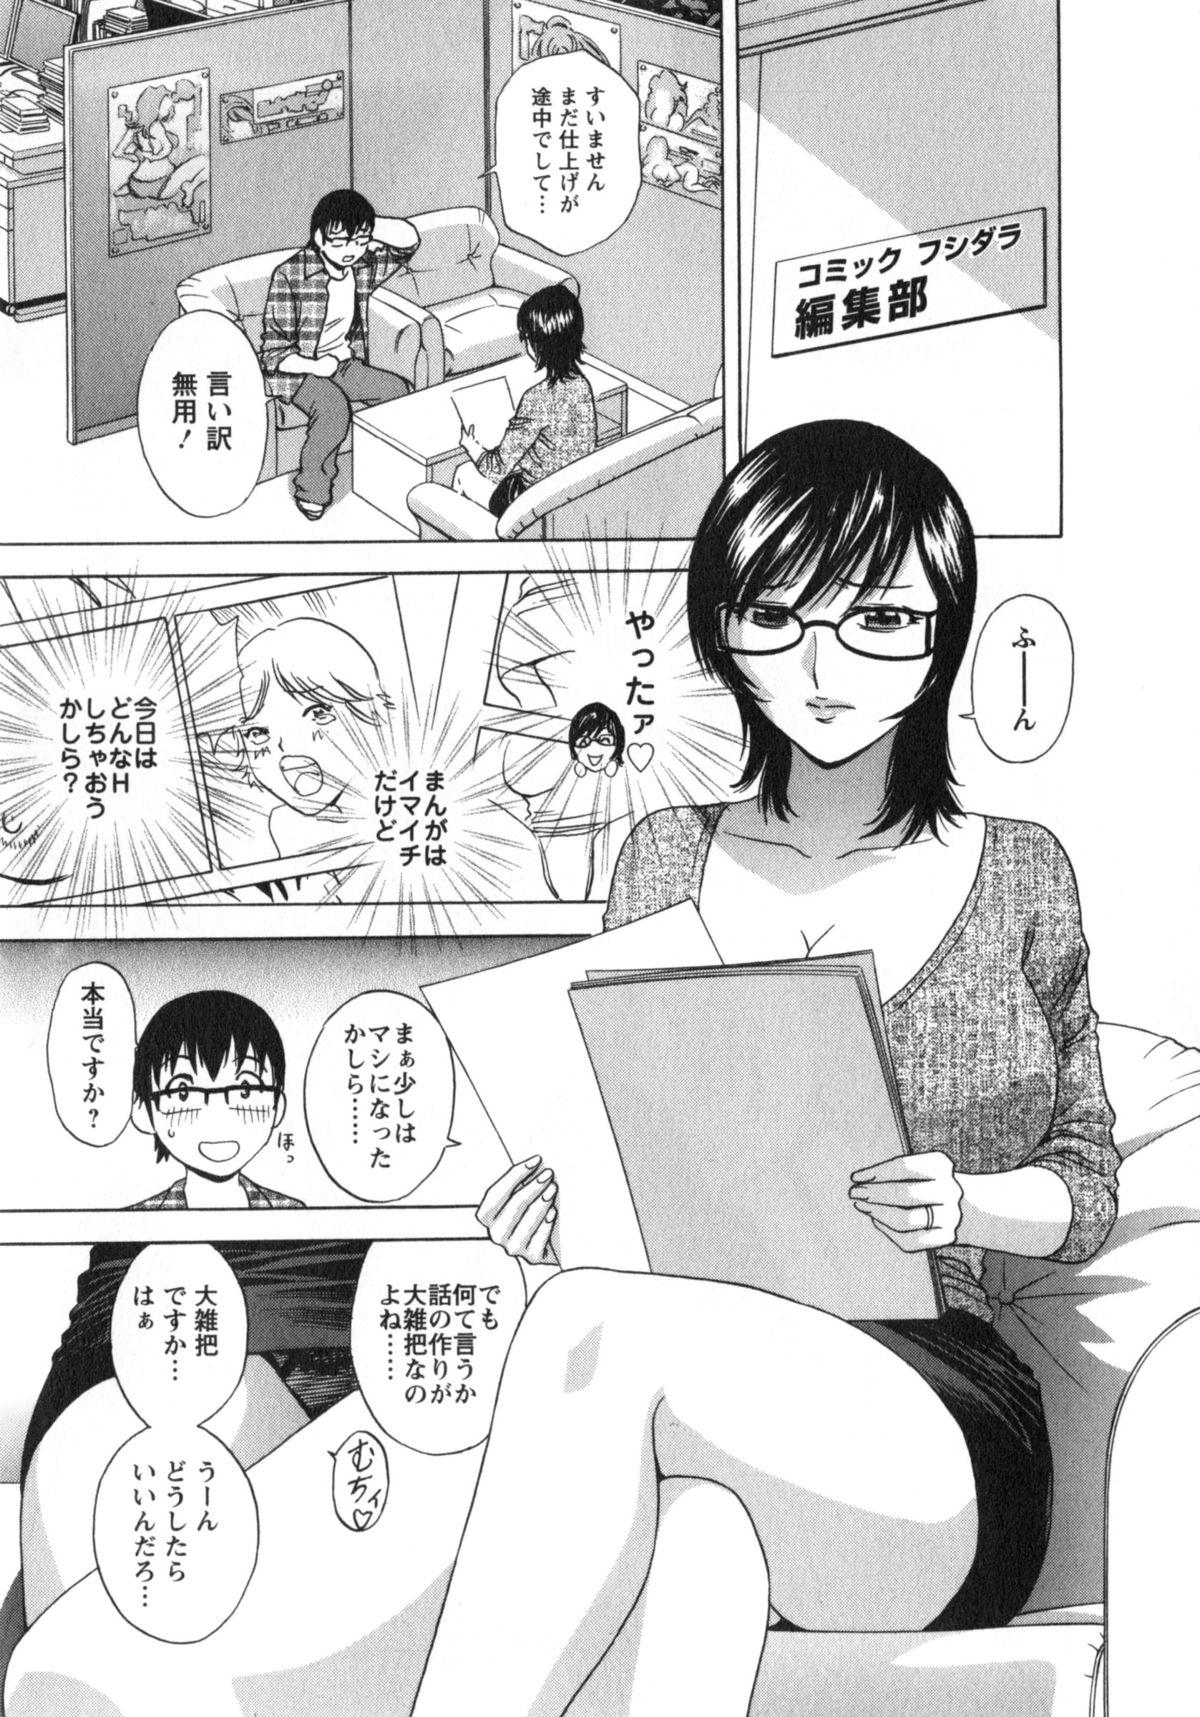 Manga no youna Hitozuma to no Hibi - Days with Married Women such as Comics. 157